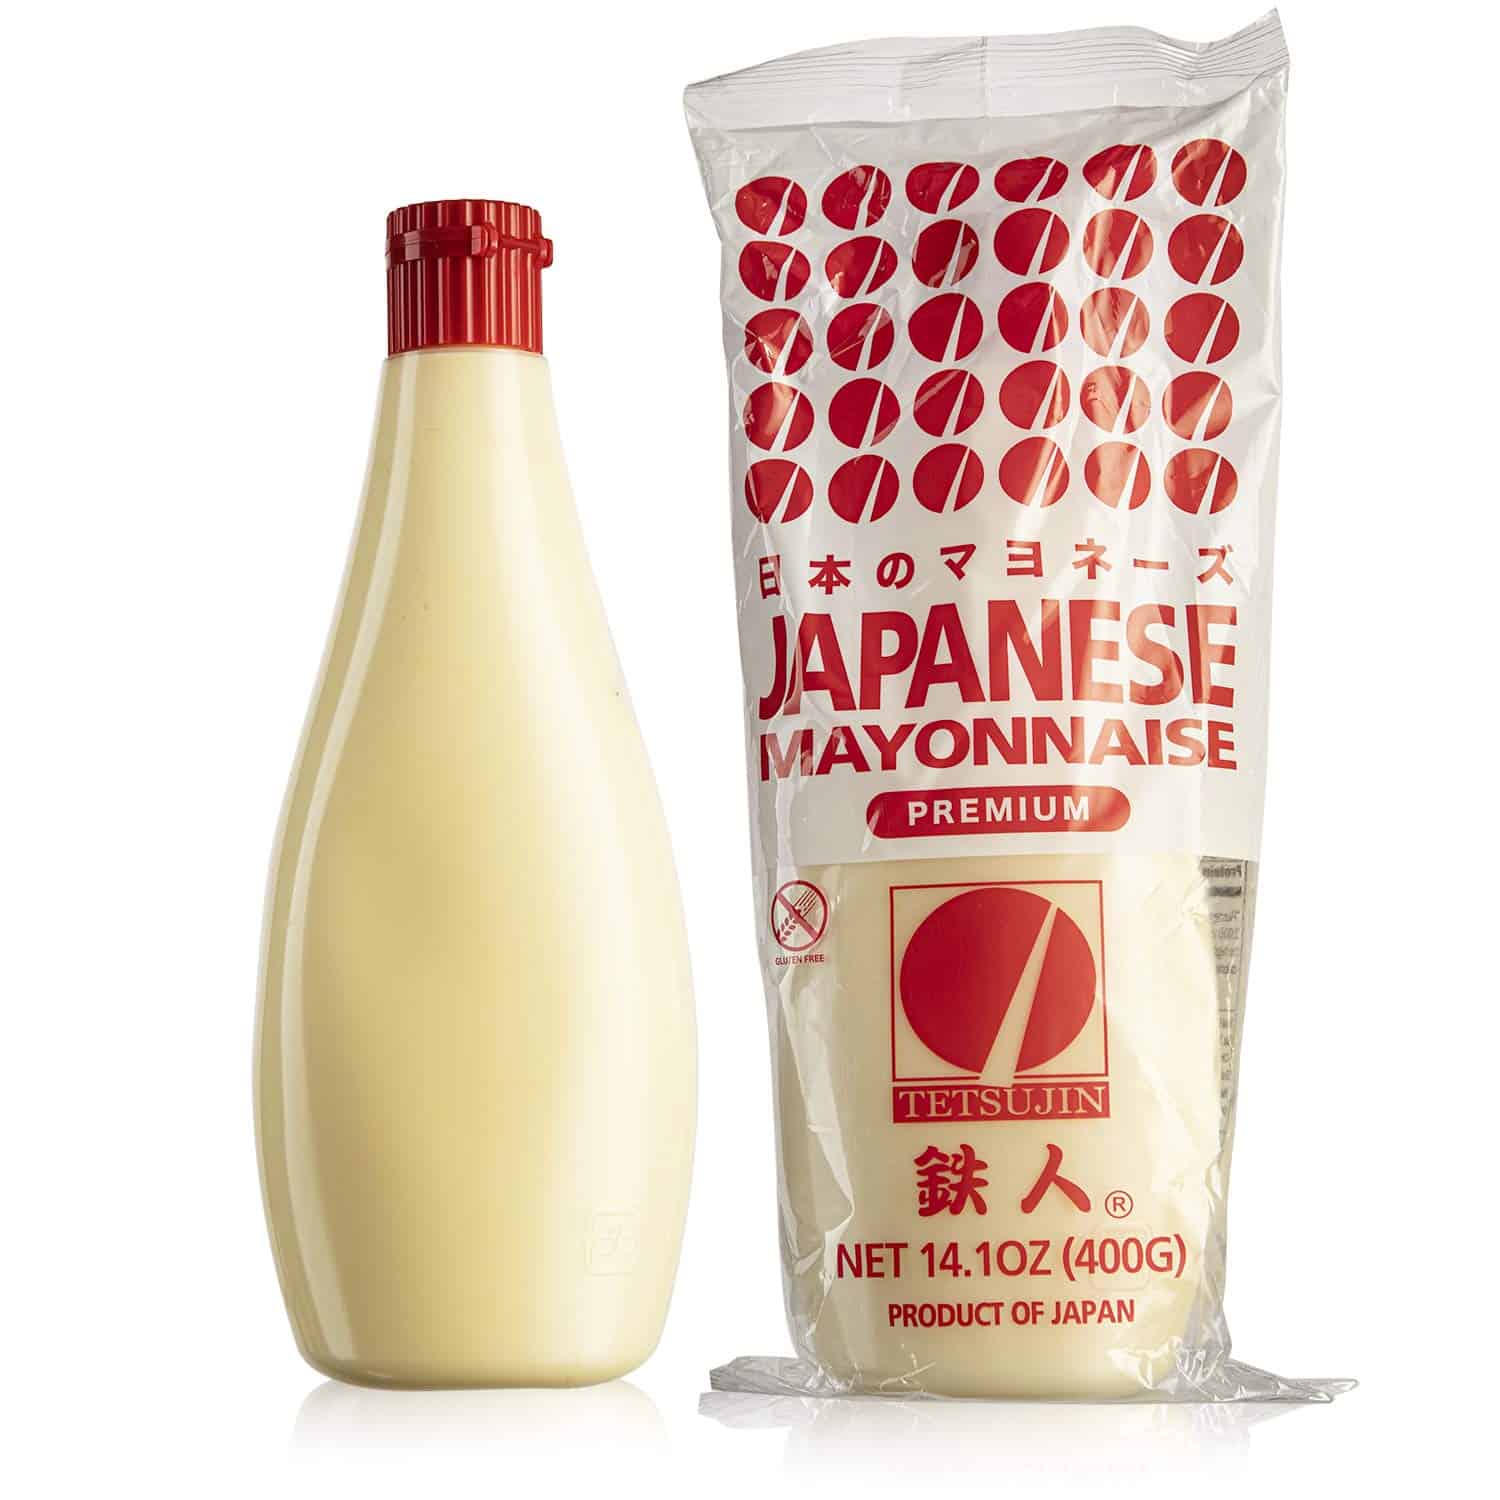 kewpie Japanese mayonnaise